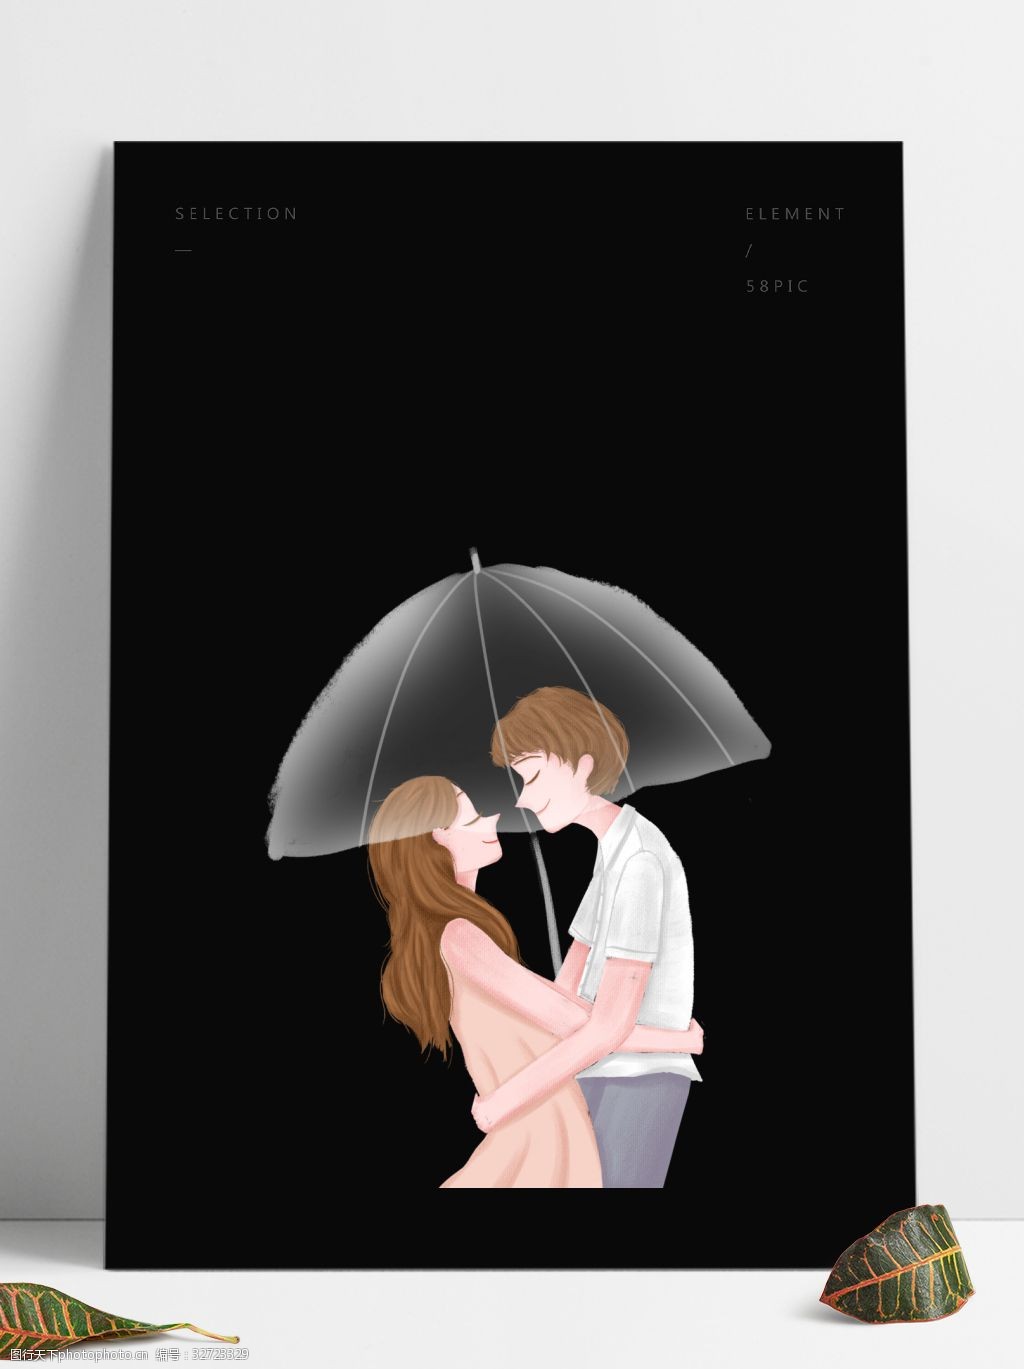 关键词:情侣拥抱装饰元素 装饰元素 手绘 情侣 雨伞 拥抱 牵手 浪漫